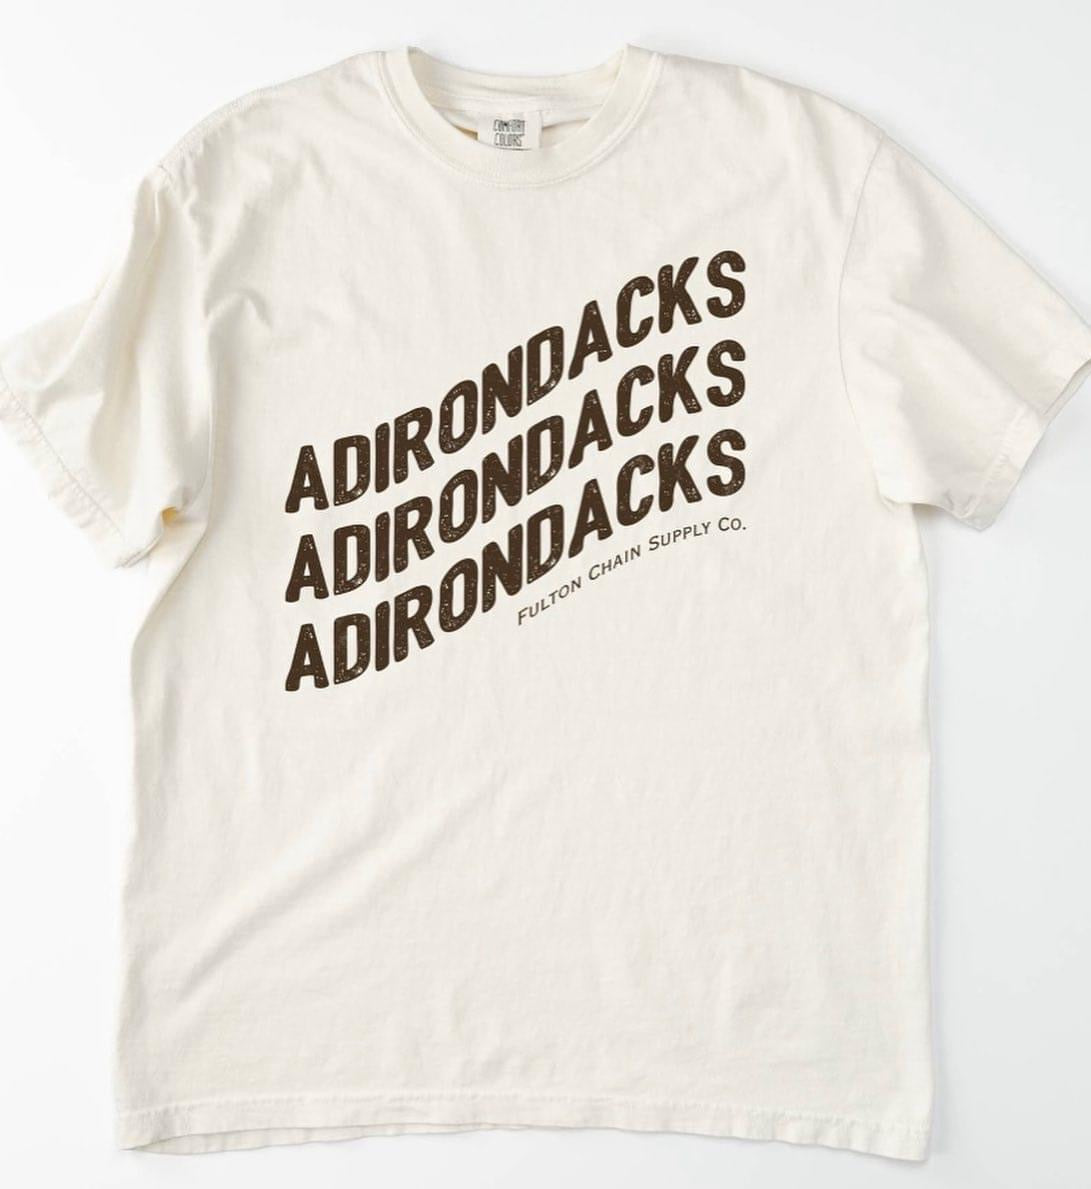 "ADIRONDACKS" Tee